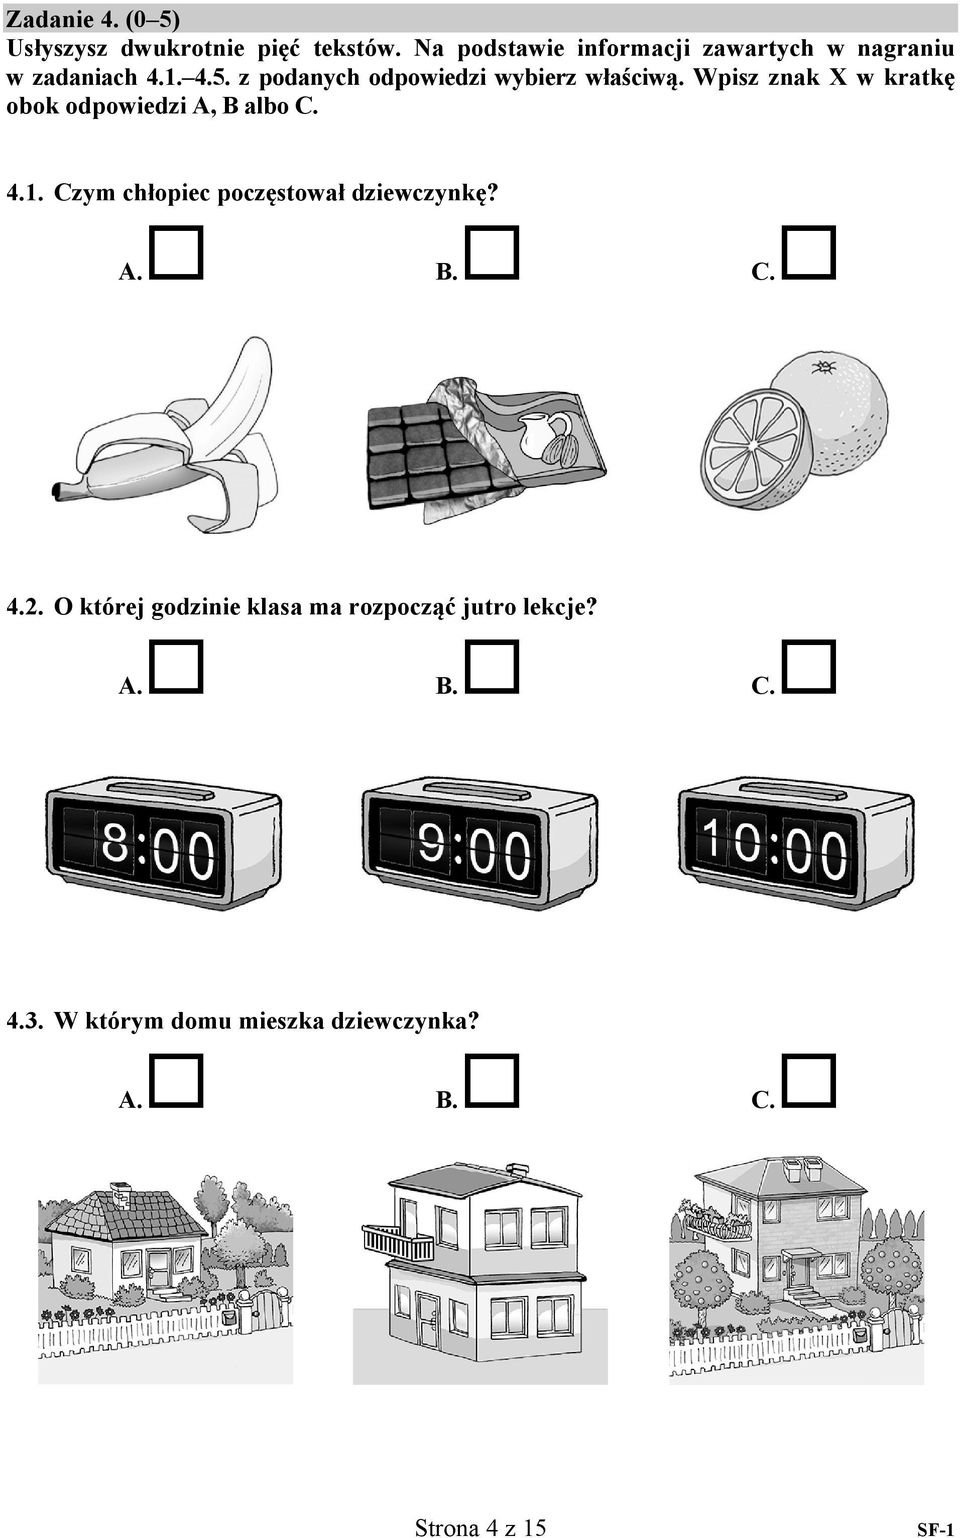 z podanych odpowiedzi wybierz właściwą. Wpisz znak X w kratkę obok odpowiedzi A, B albo C.